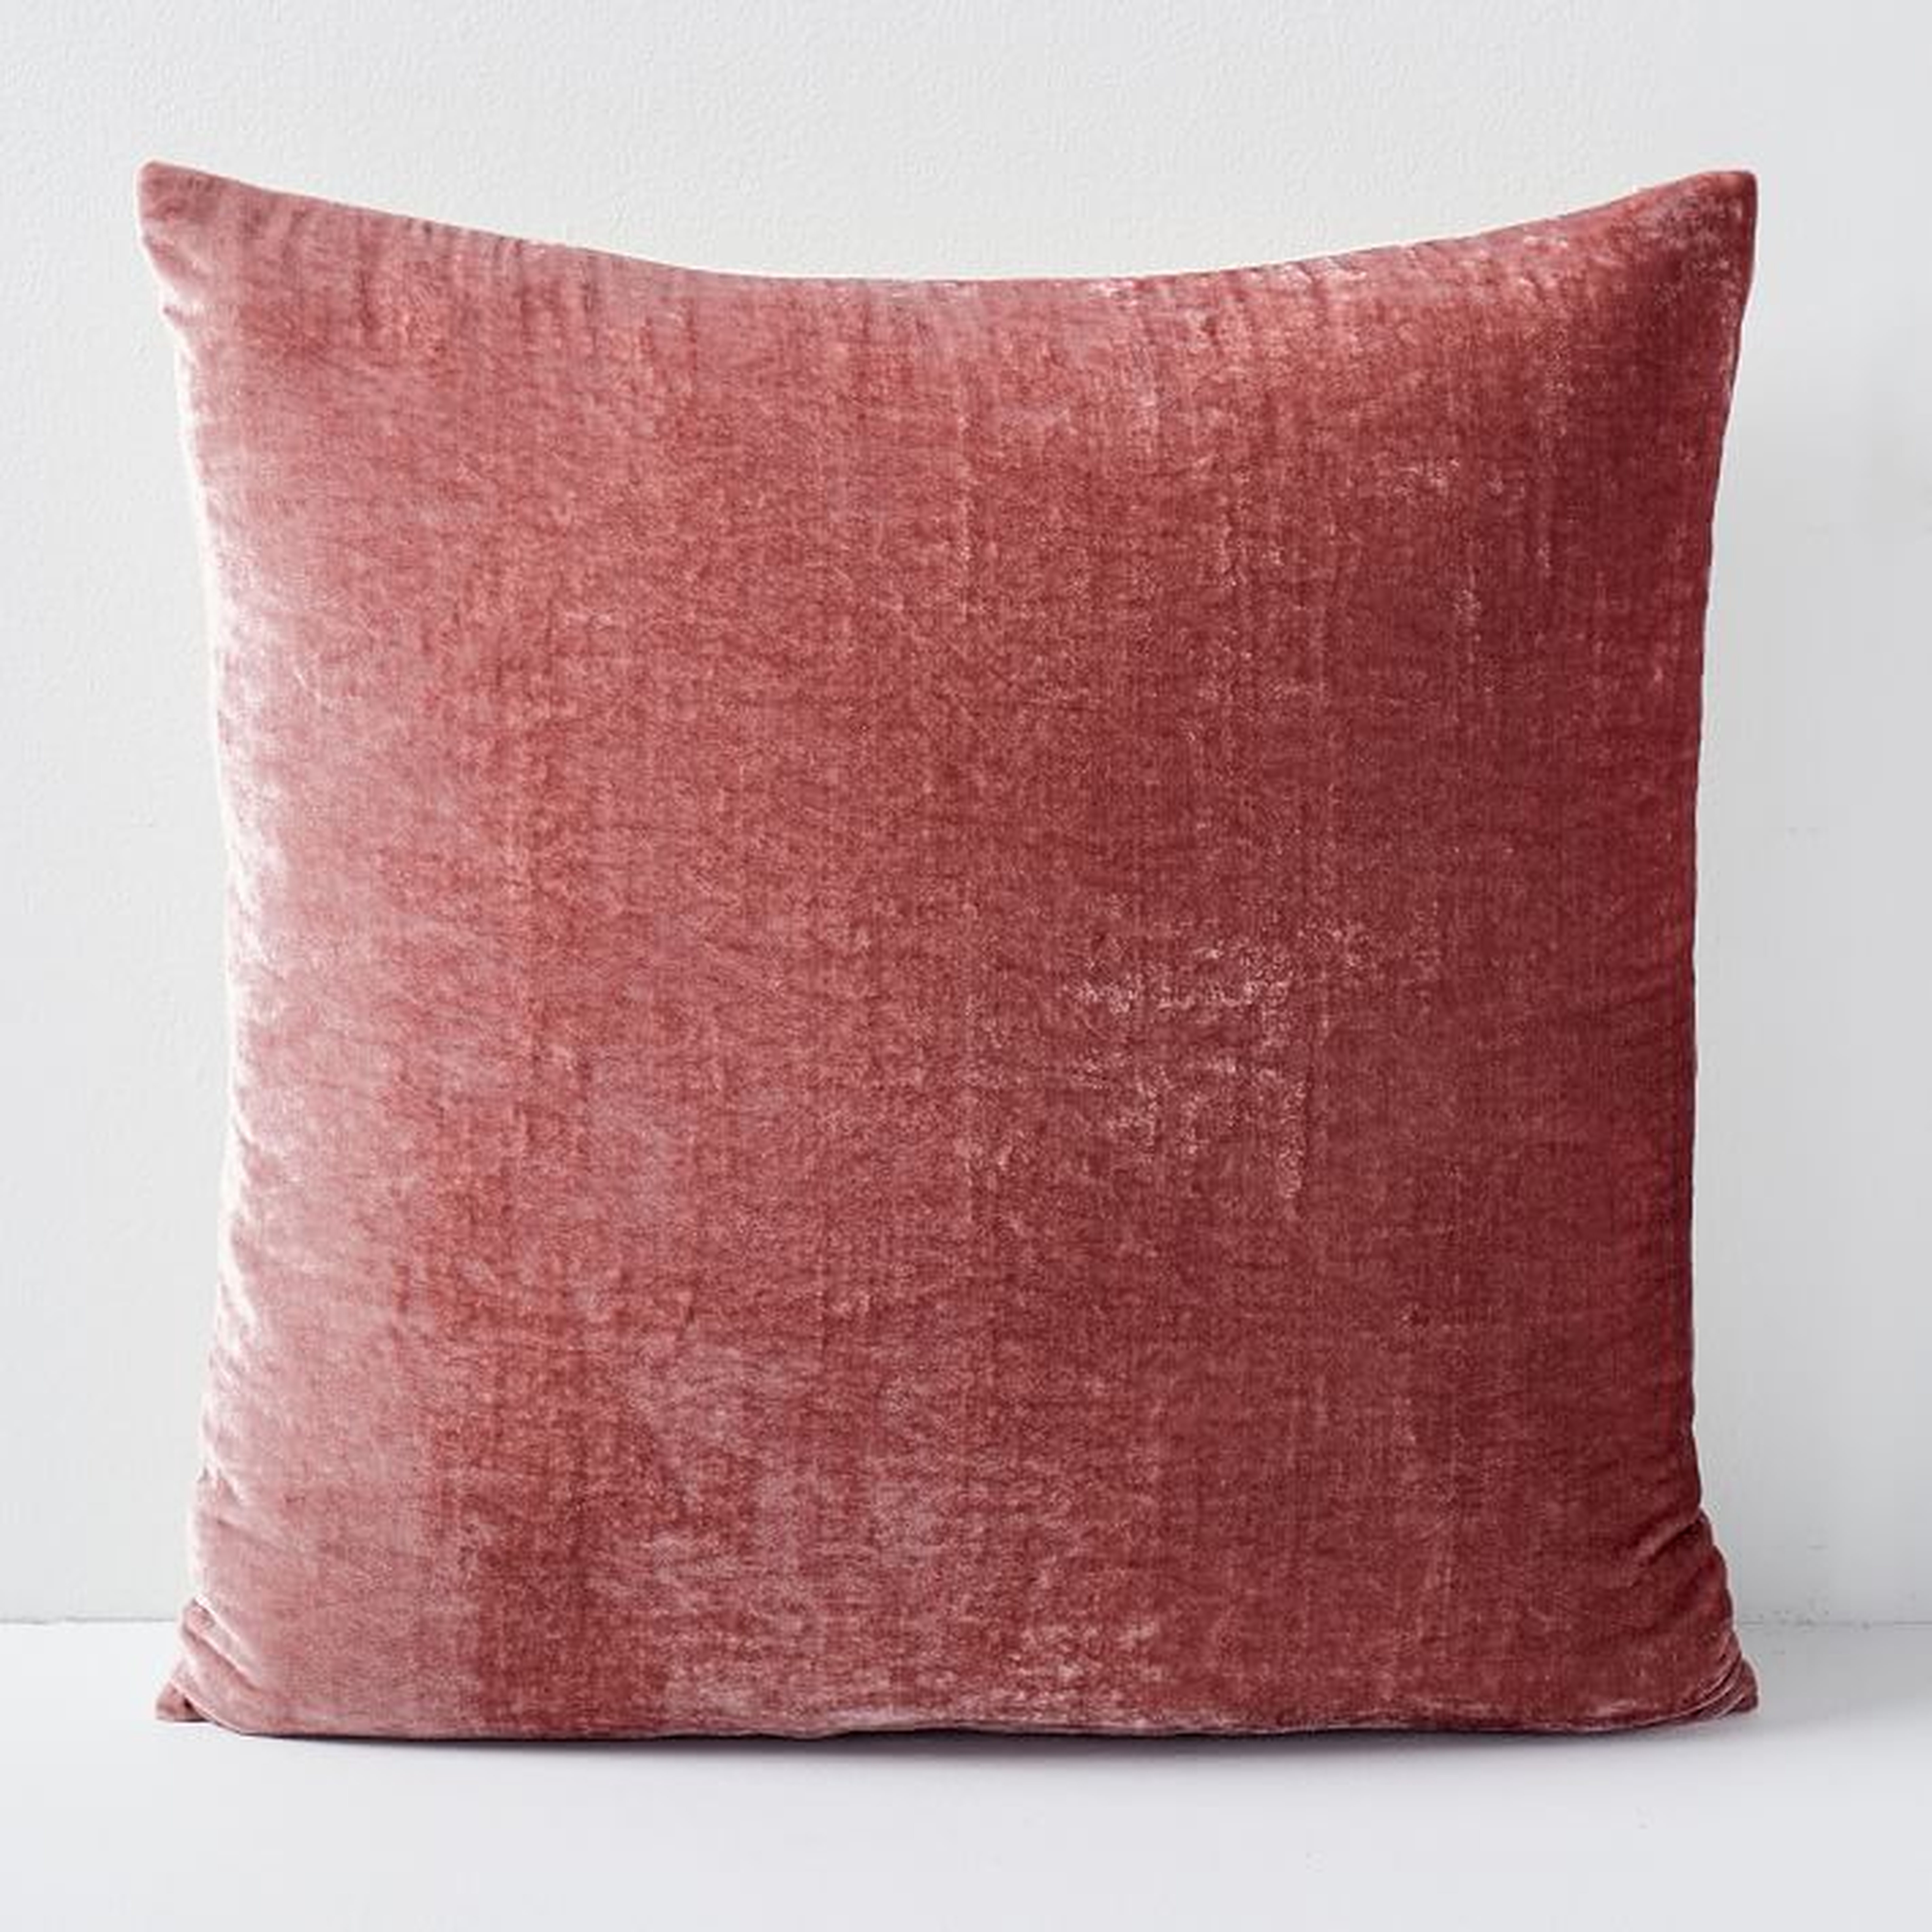 Lush Velvet Pillow Covers - West Elm